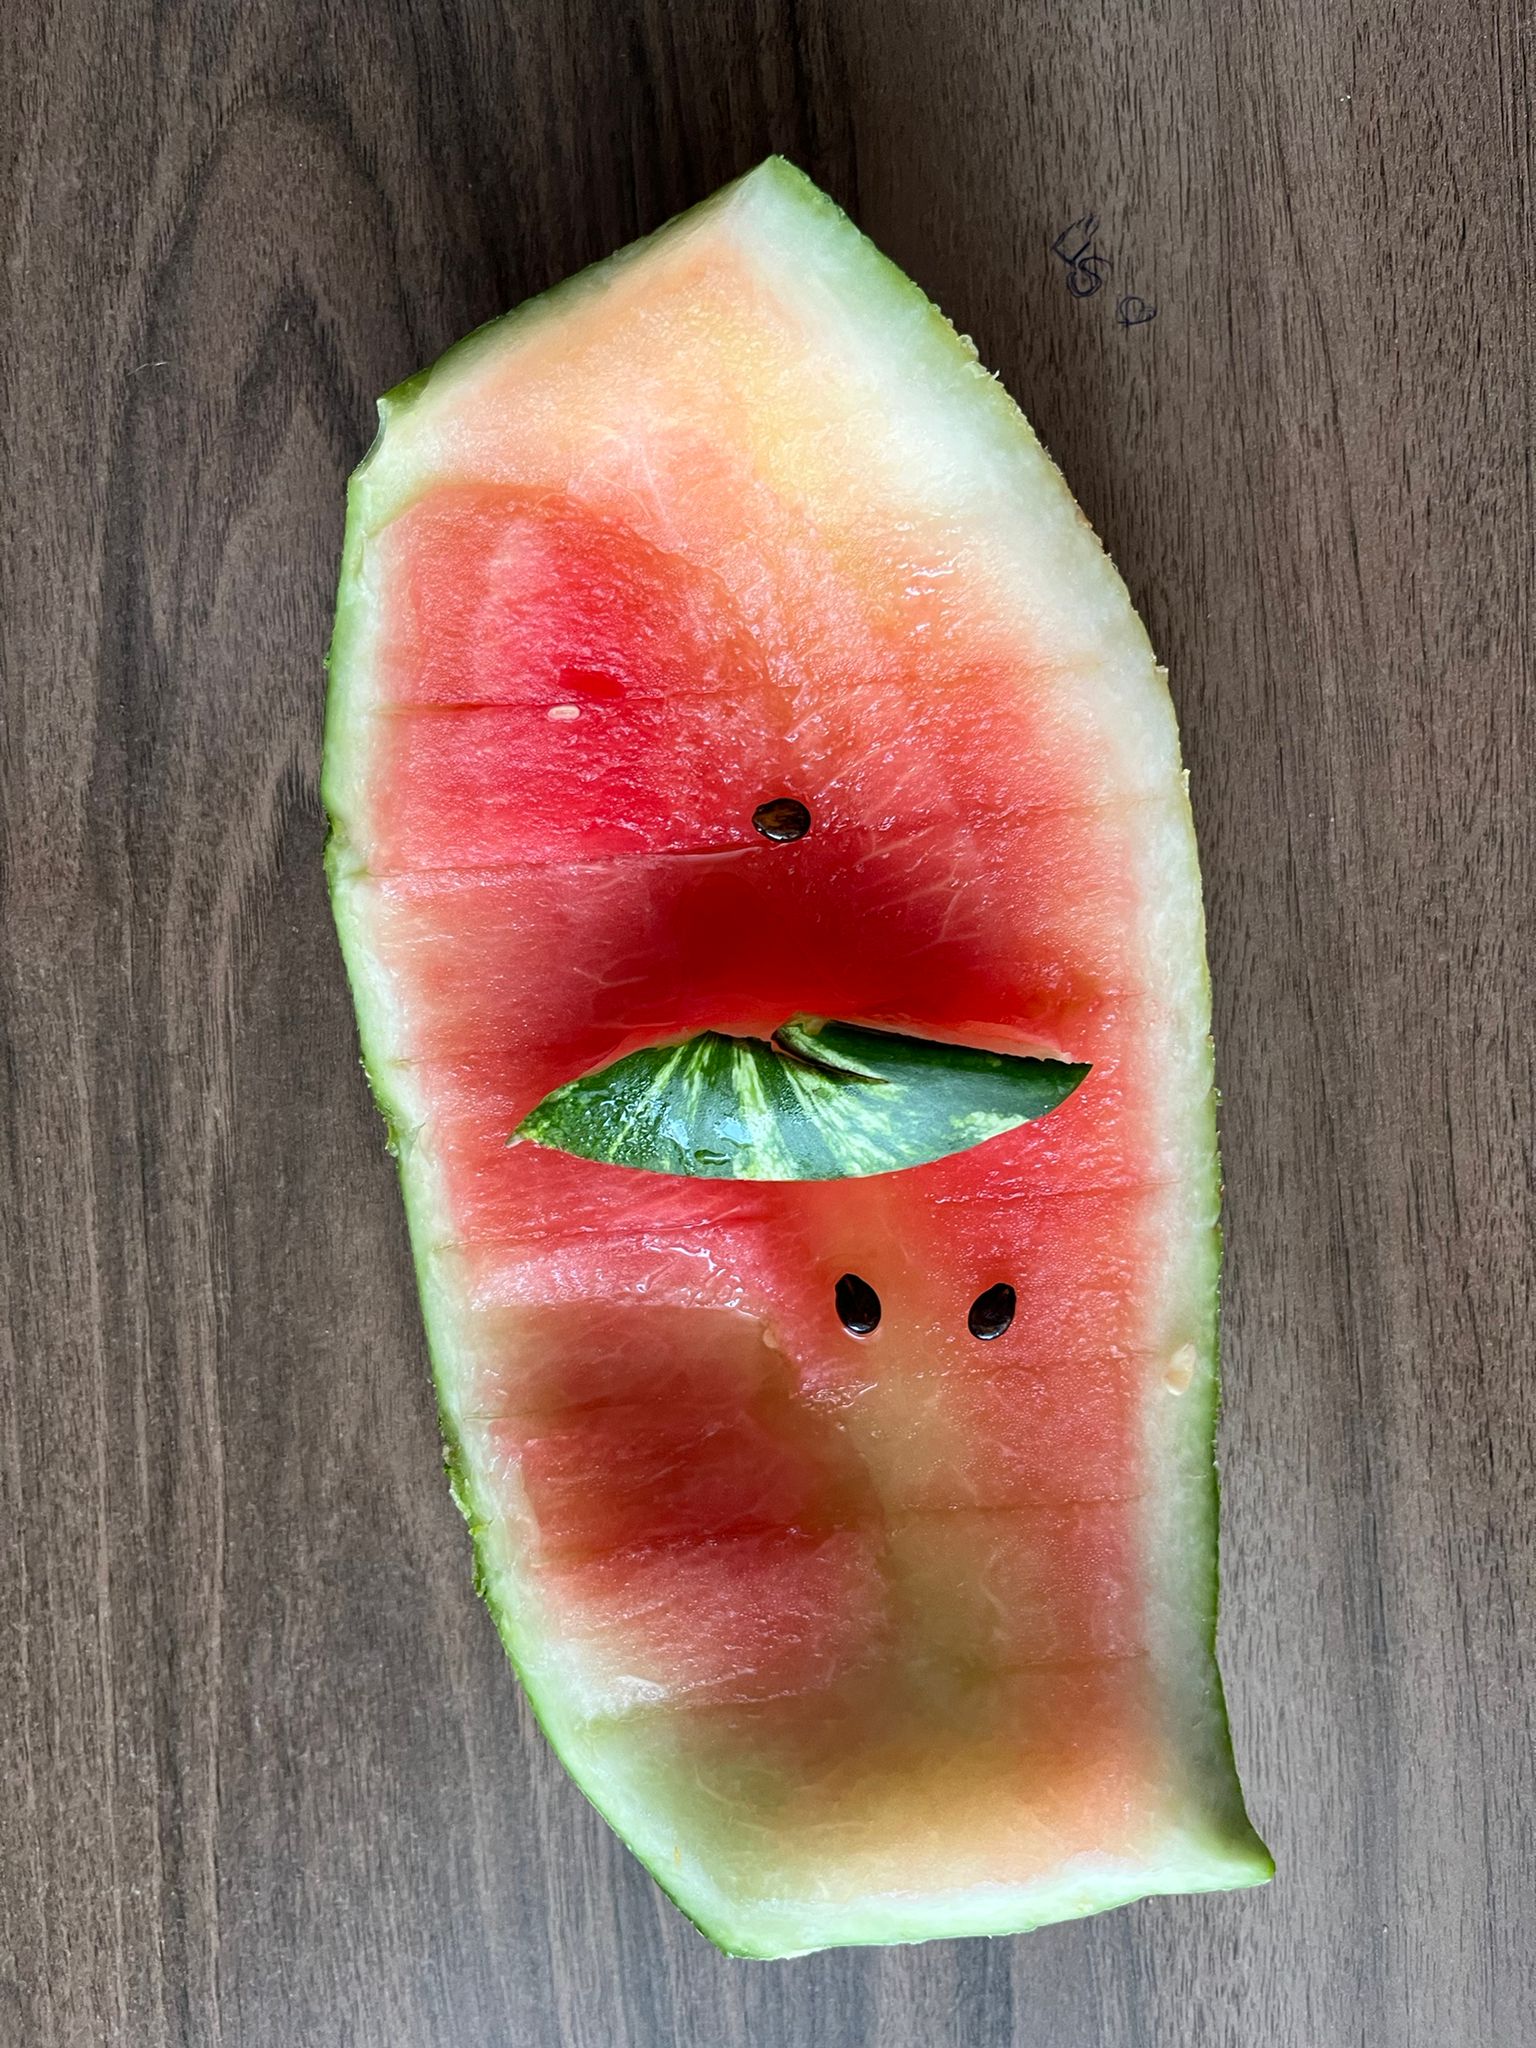 Sad Bored Watermelon - Collection | OpenSea